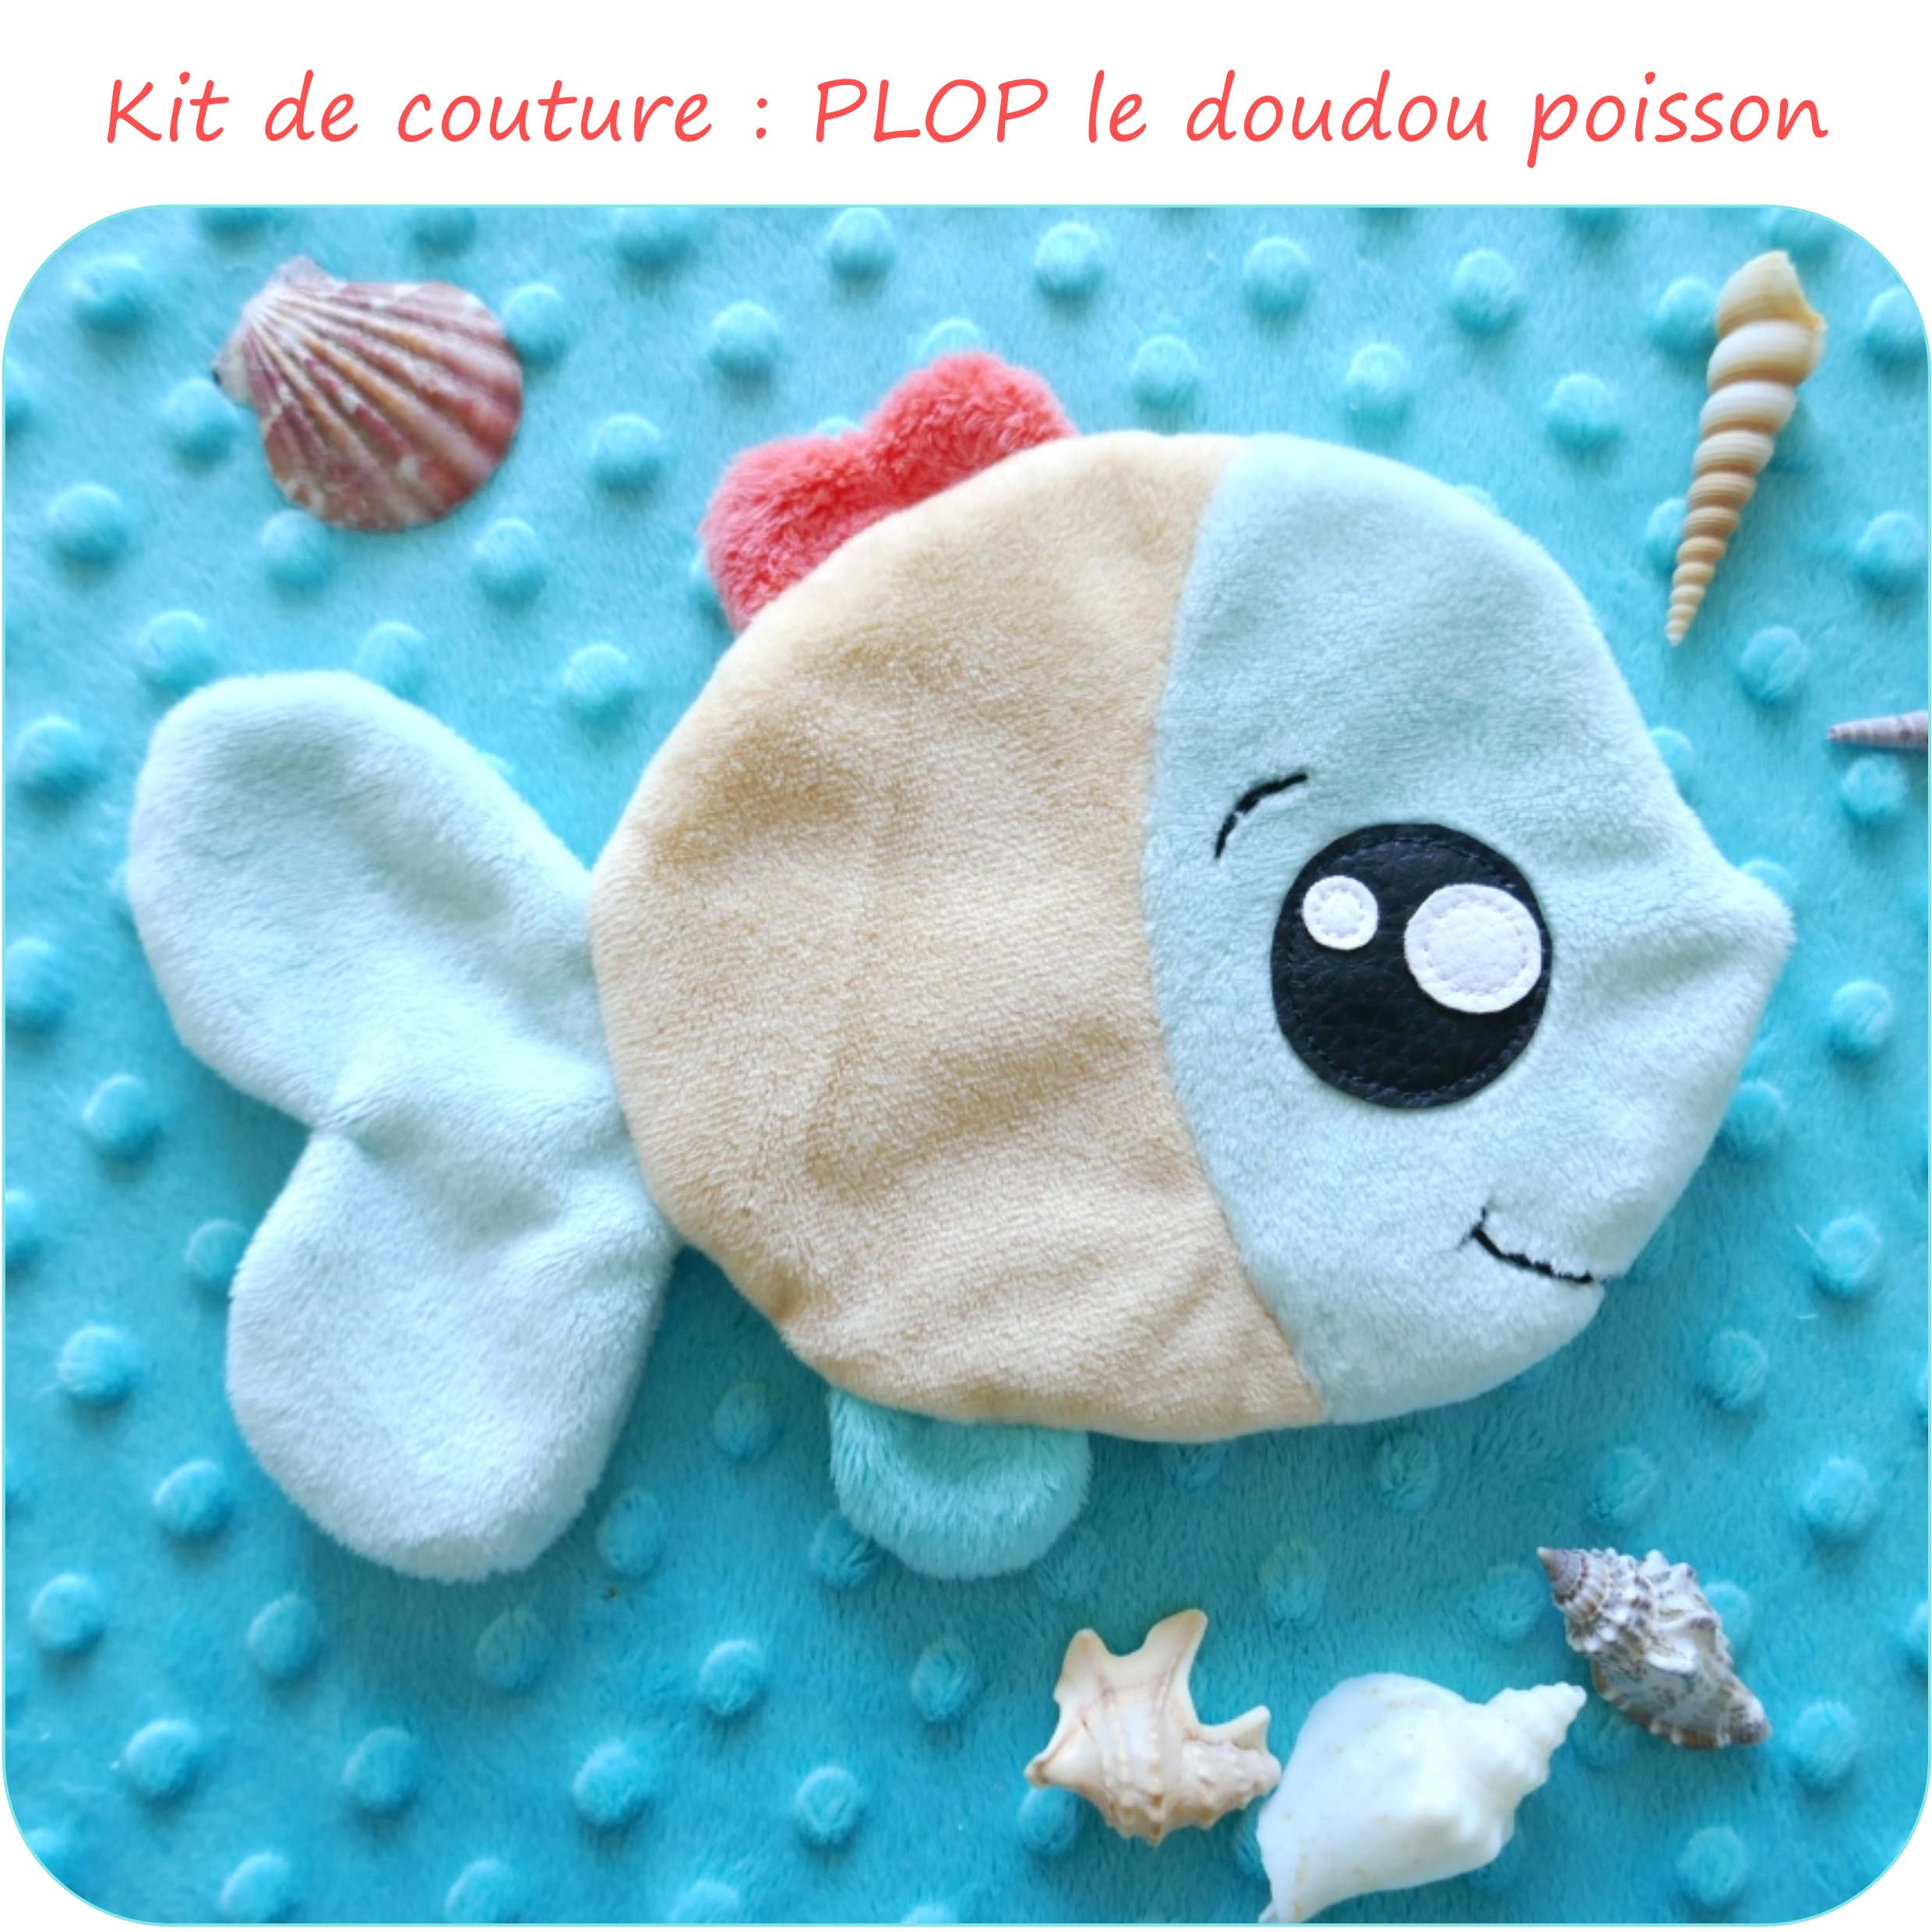 PLOP-KitCouture_PetitsDom